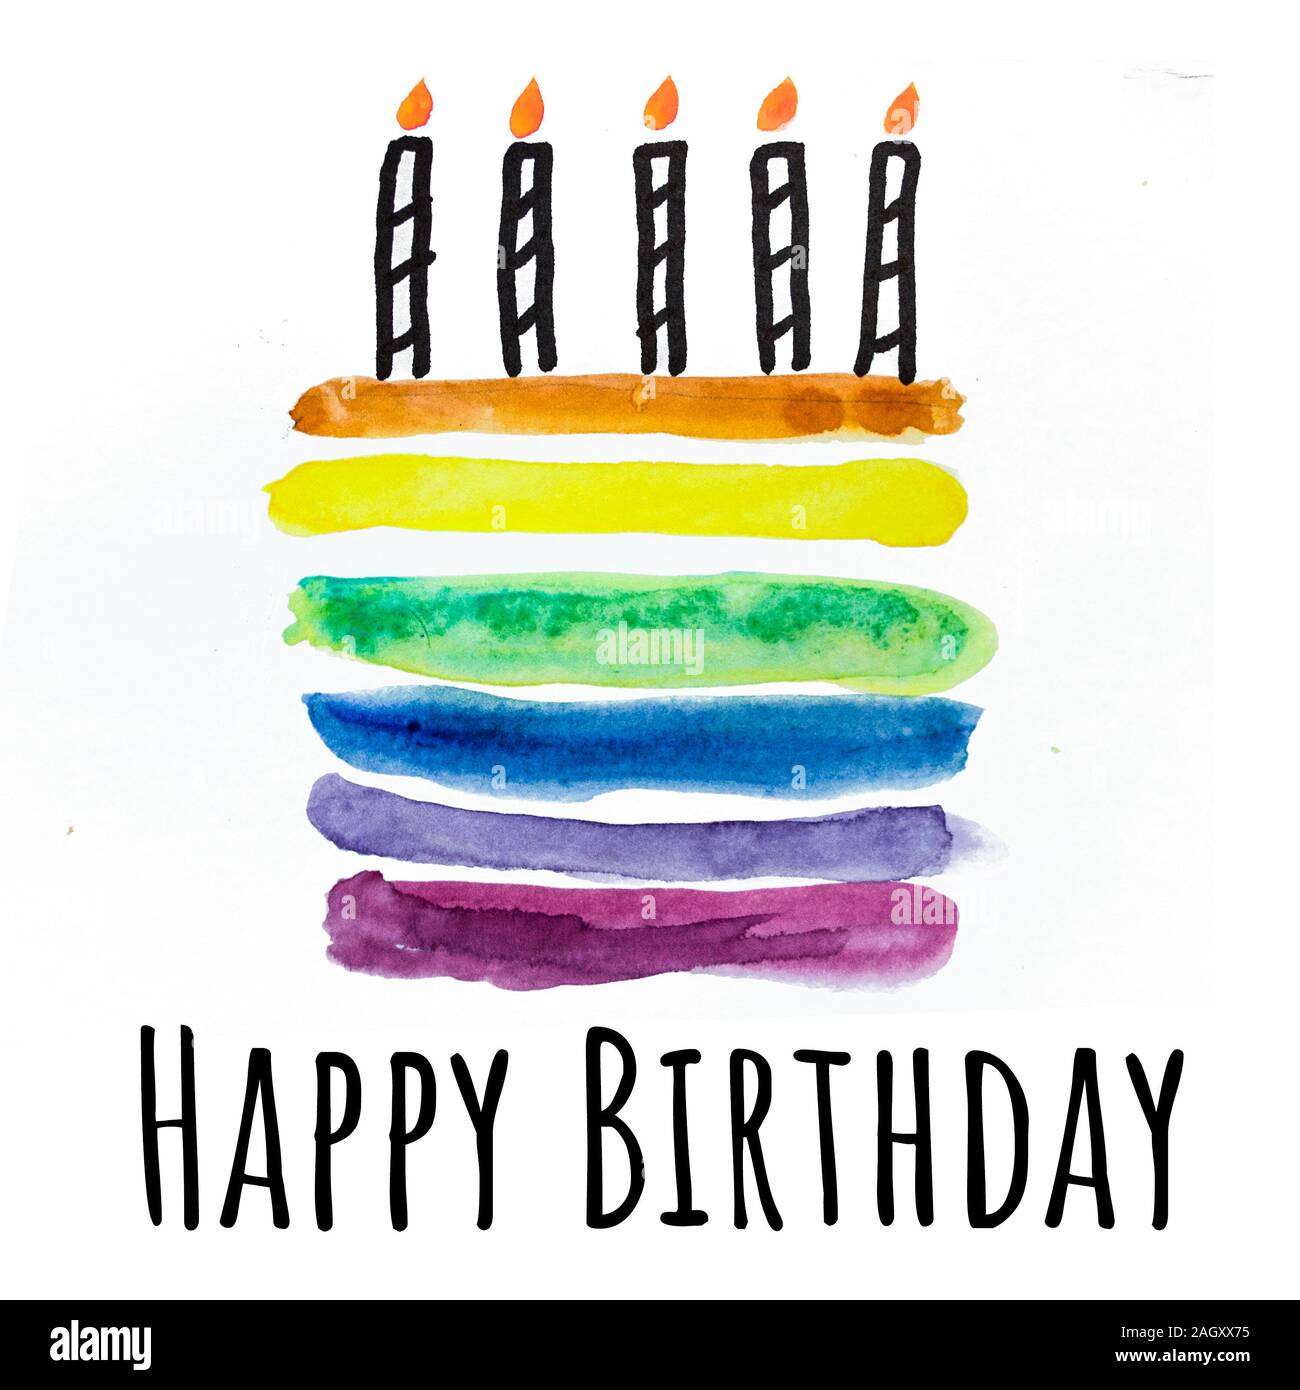 Kuchen mit Kerzen. Aquarell Zeichnung. Geburtstag Grußkarte Stockfotografie  - Alamy